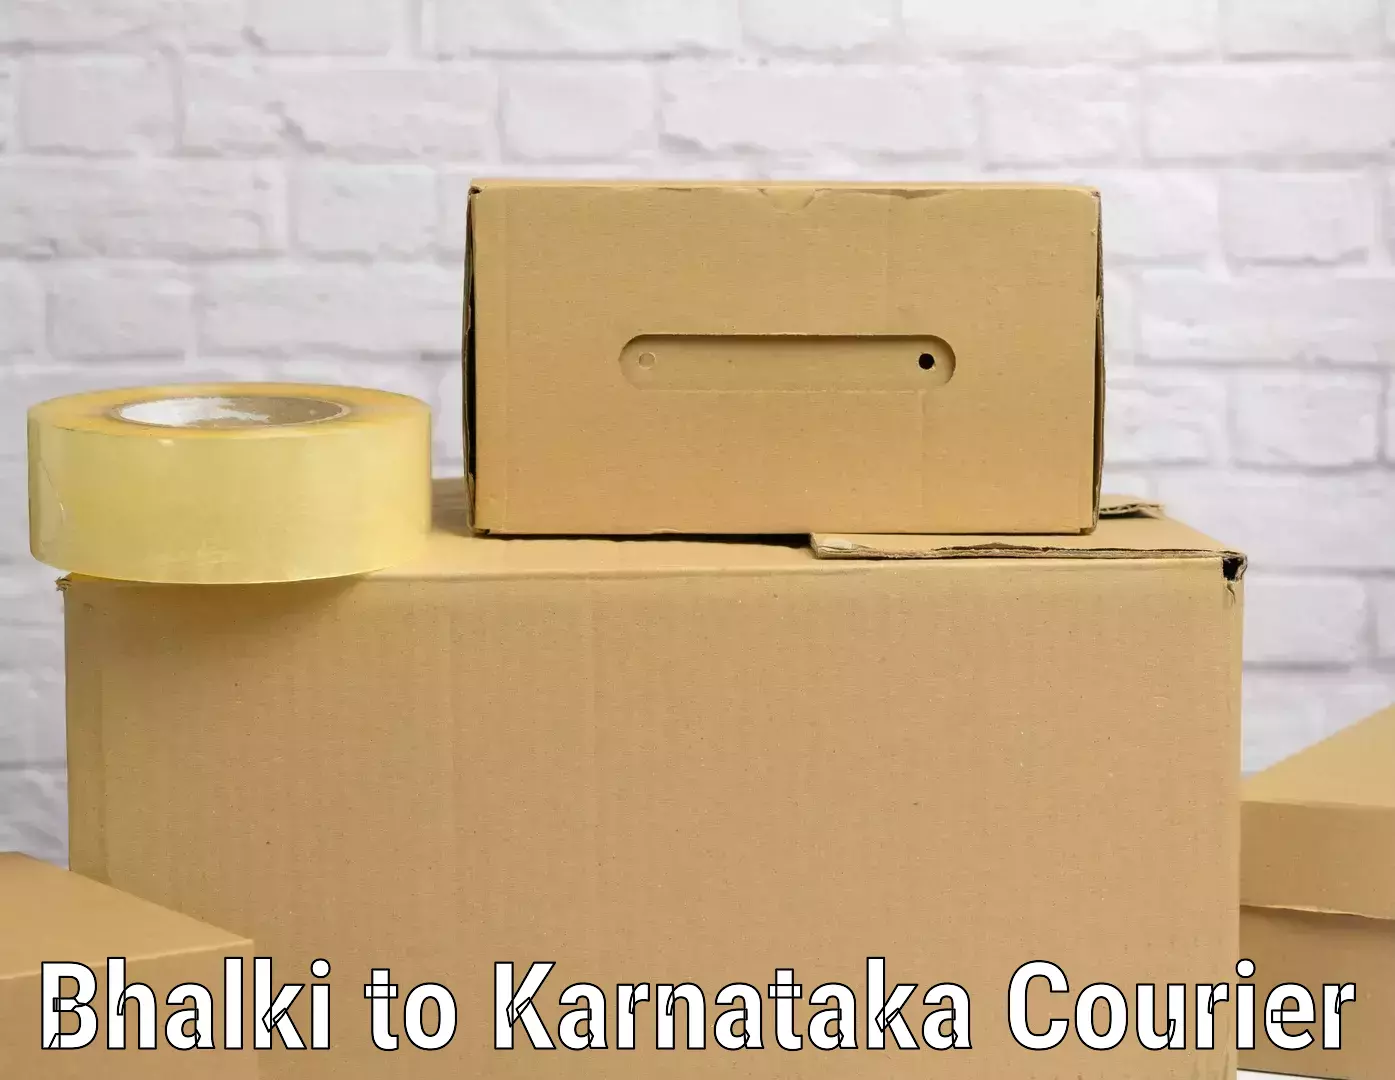 Electronic items luggage shipping Bhalki to Karnataka